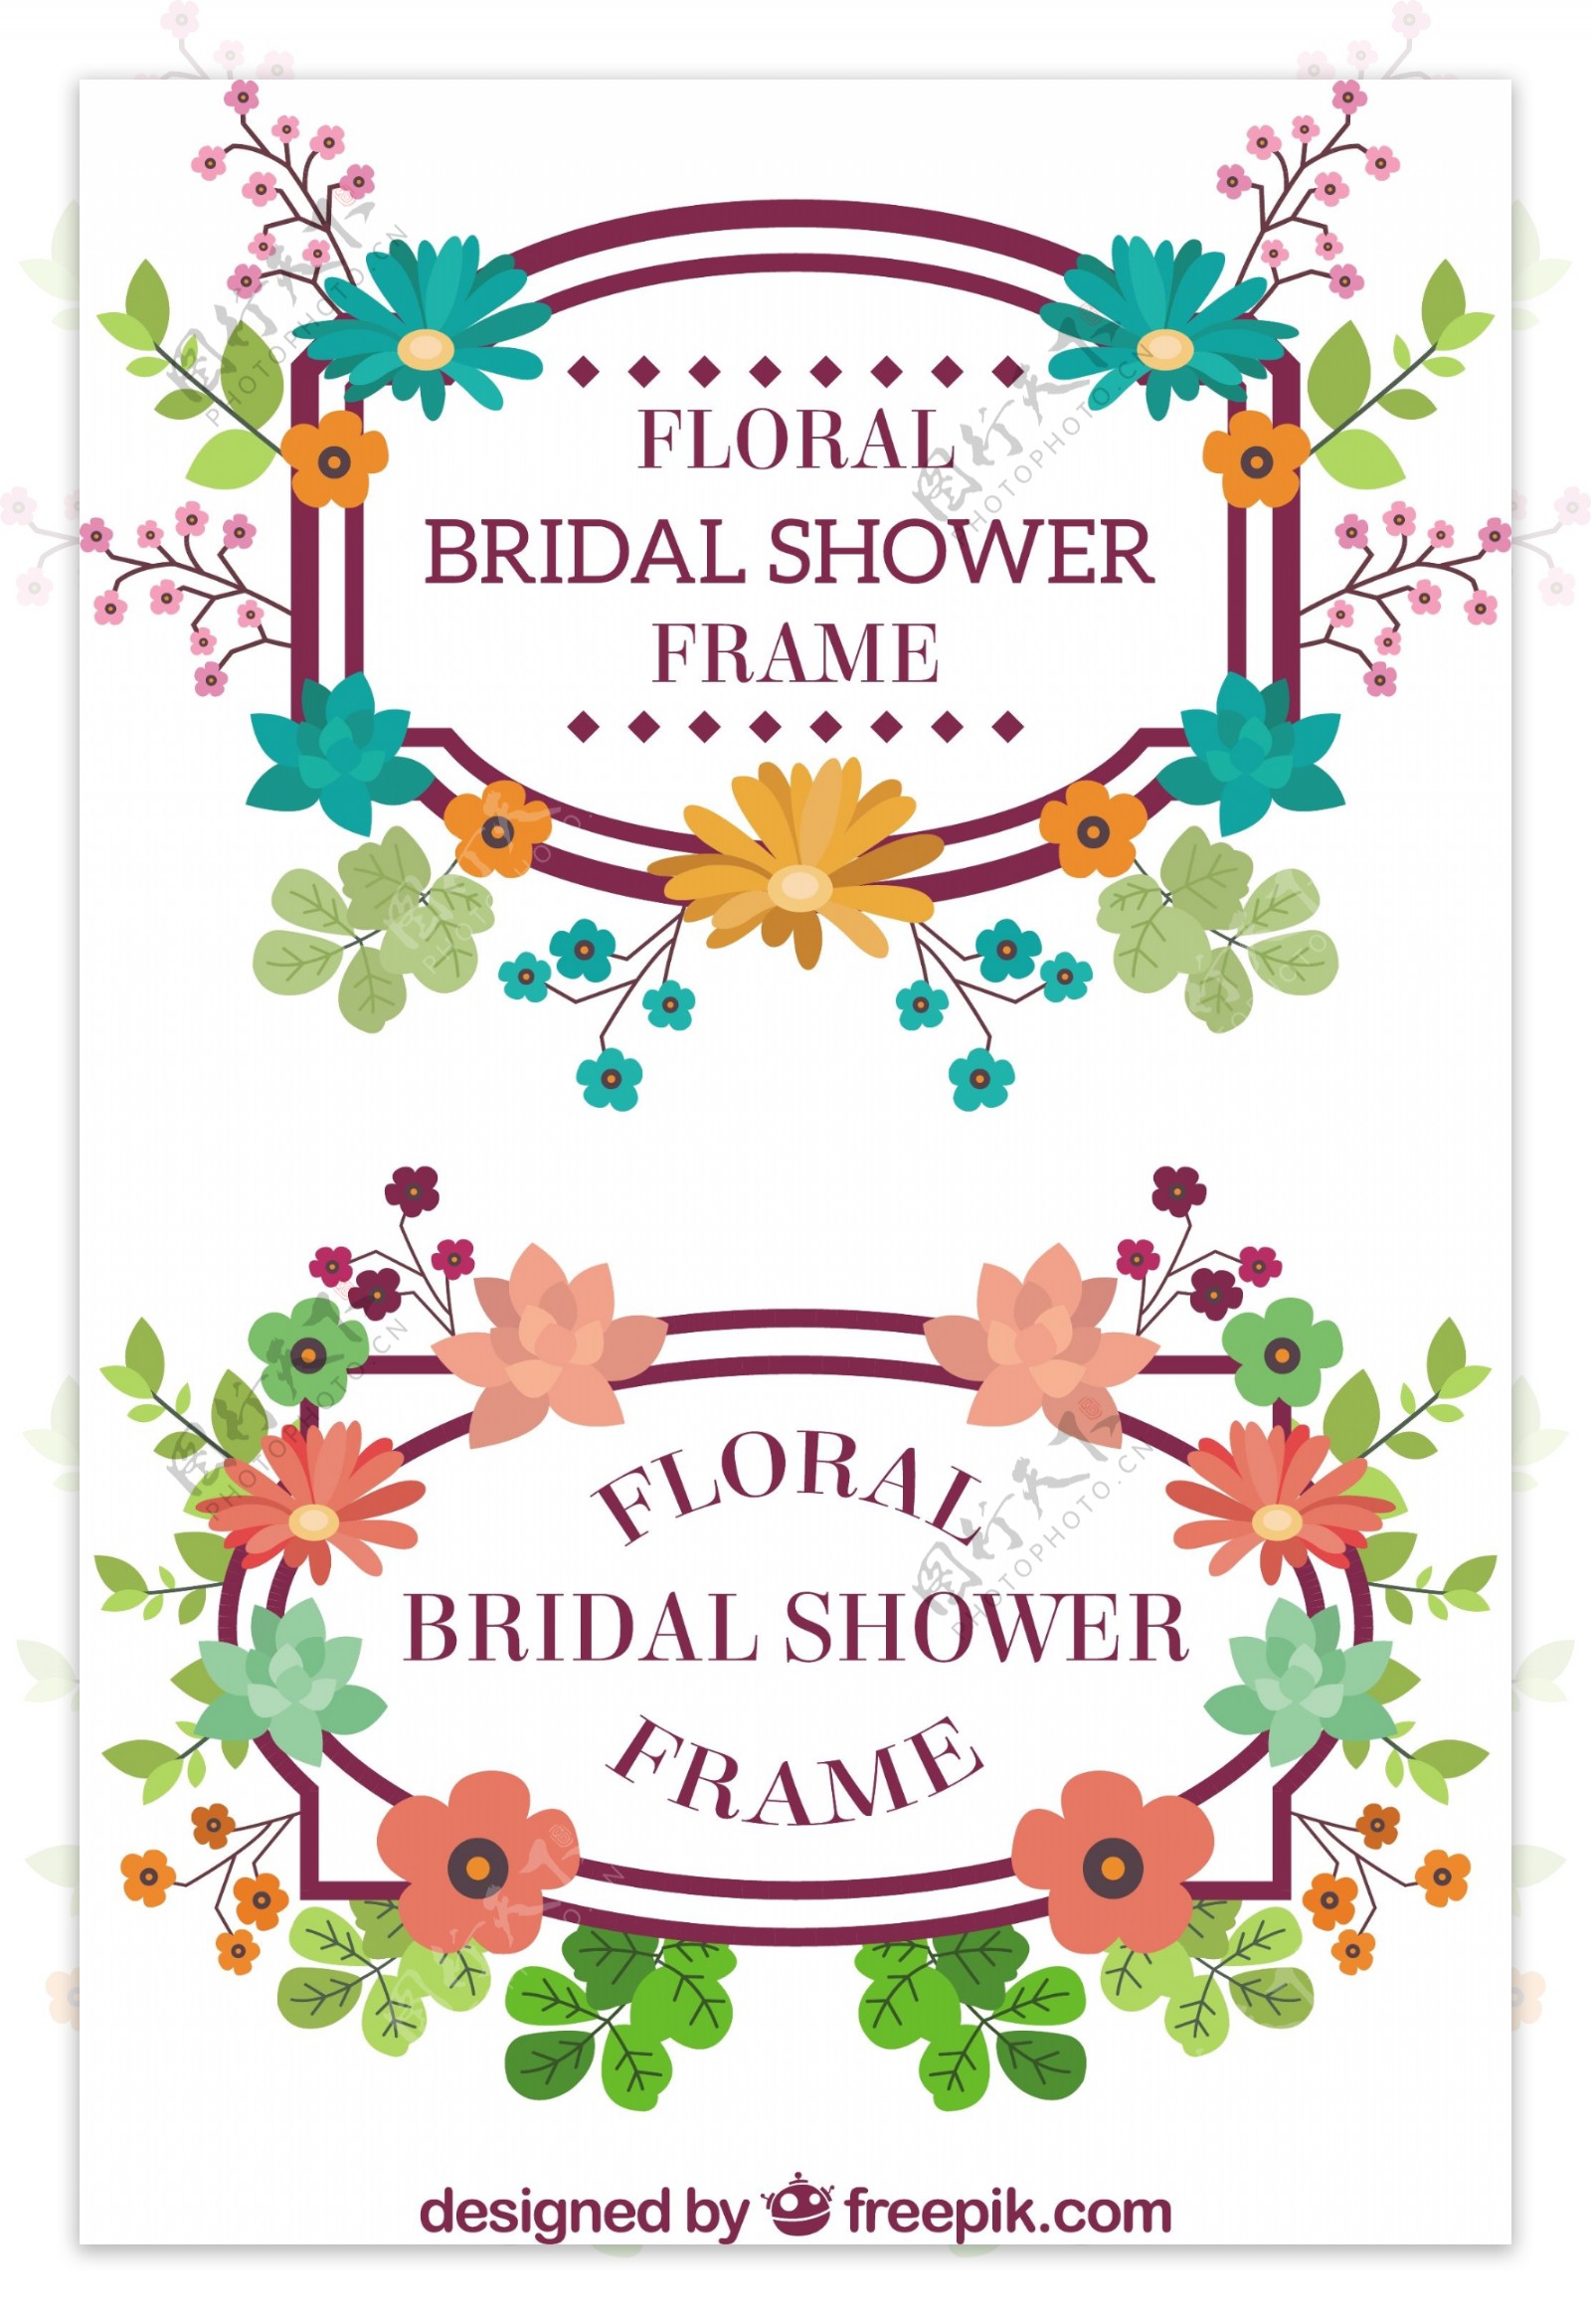 手绘彩色的花朵美妙的婚礼边框花边矢量素材